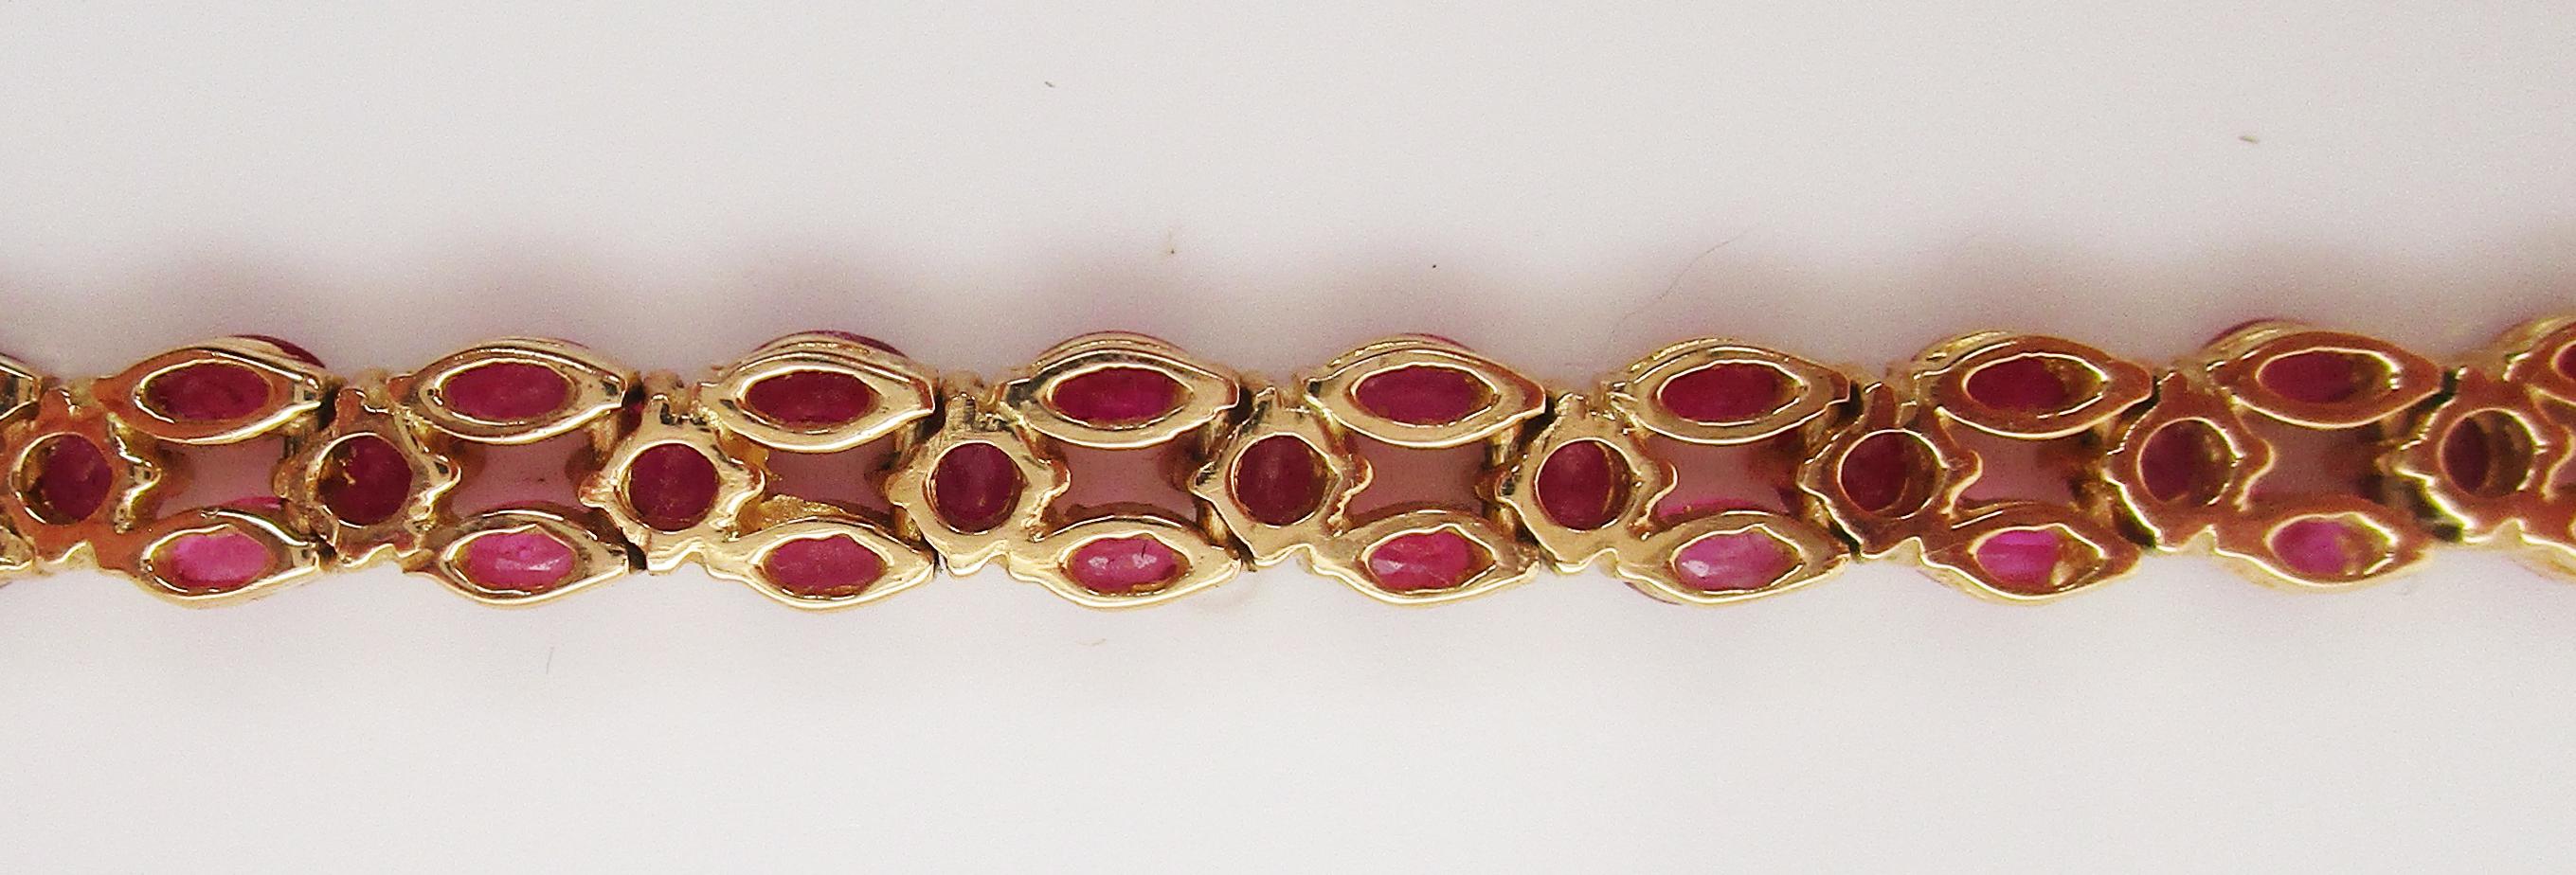 Armband aus 18 Karat Gelbgold mit 5 Karat rotem Rubin (Zeitgenössisch)